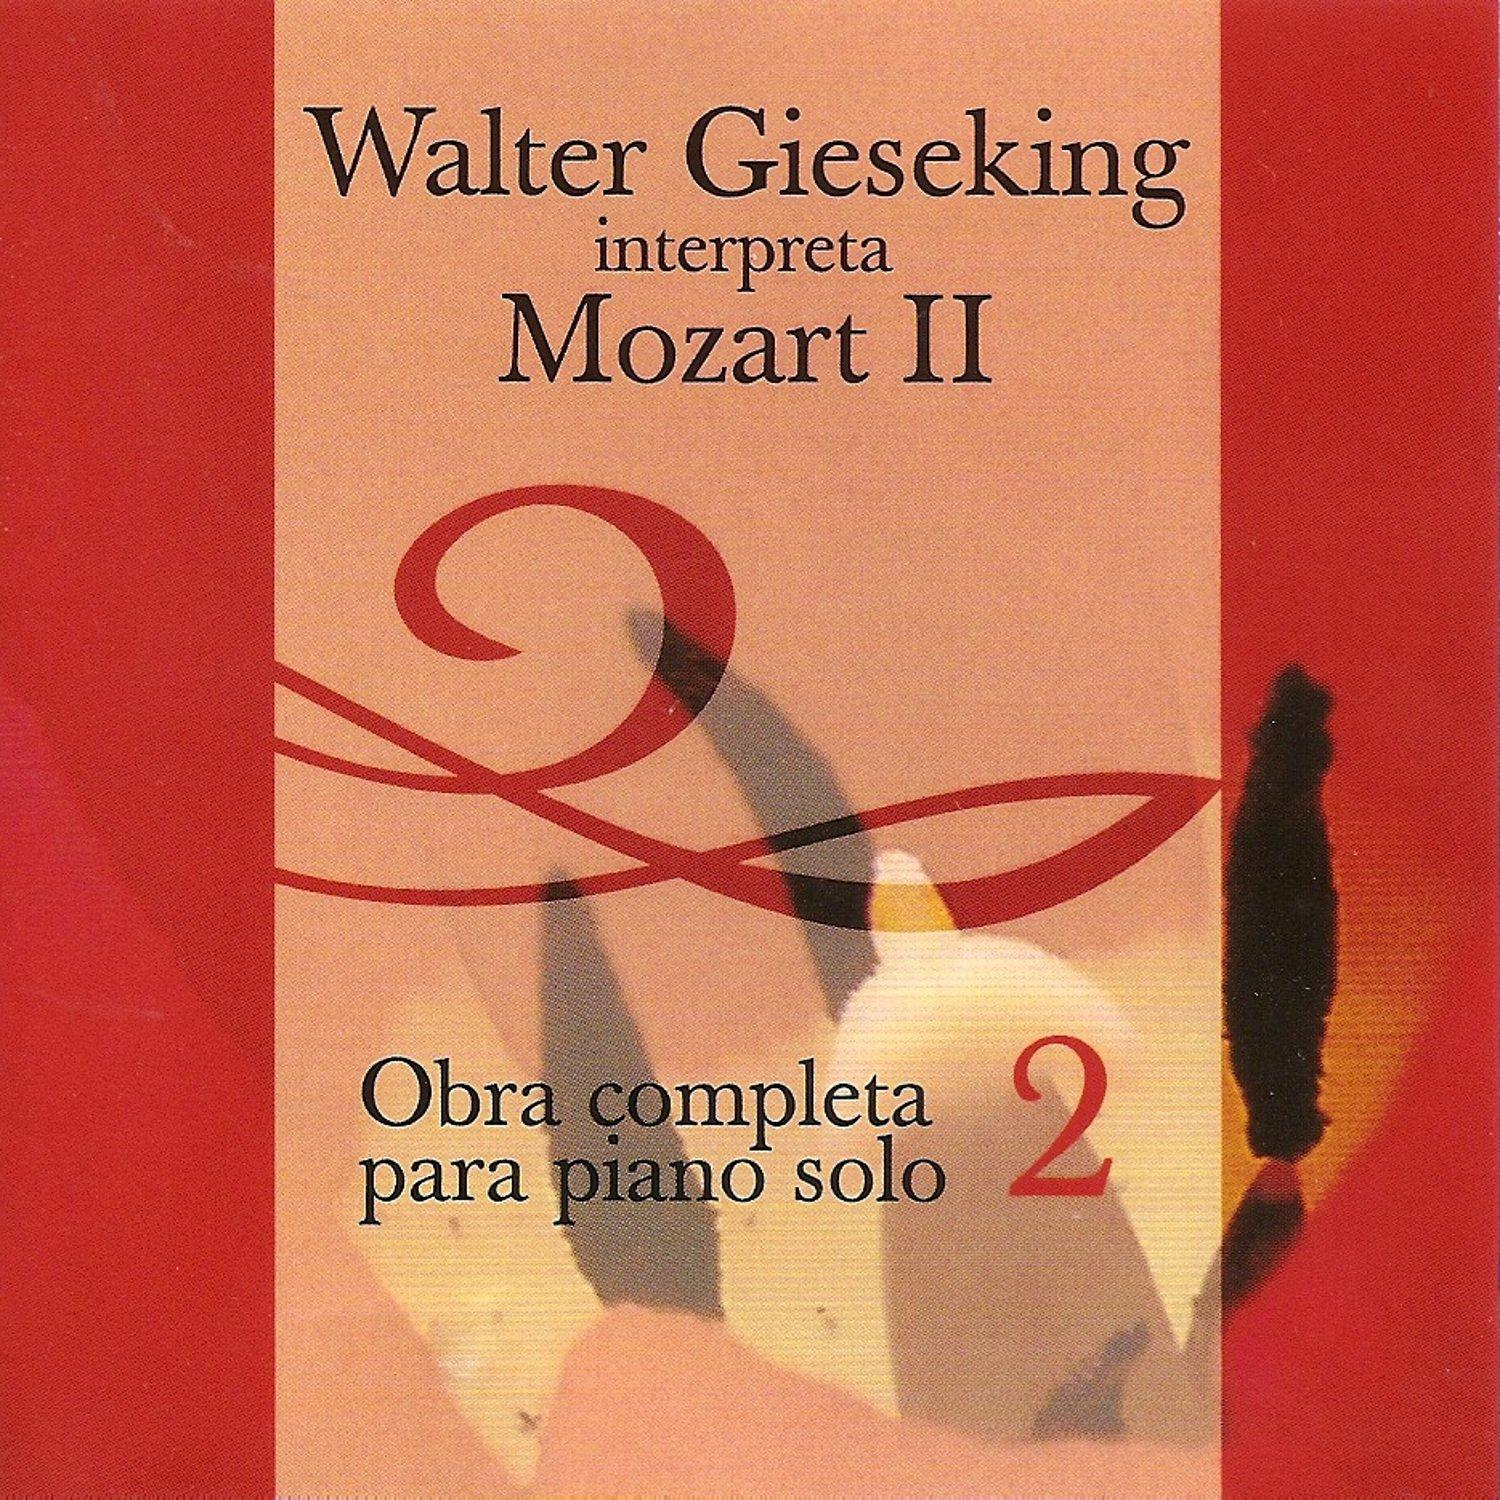 Walter Gieseking Interpreta a Mozart 2 - Obra Completa para Piano Solo - Vol. 1